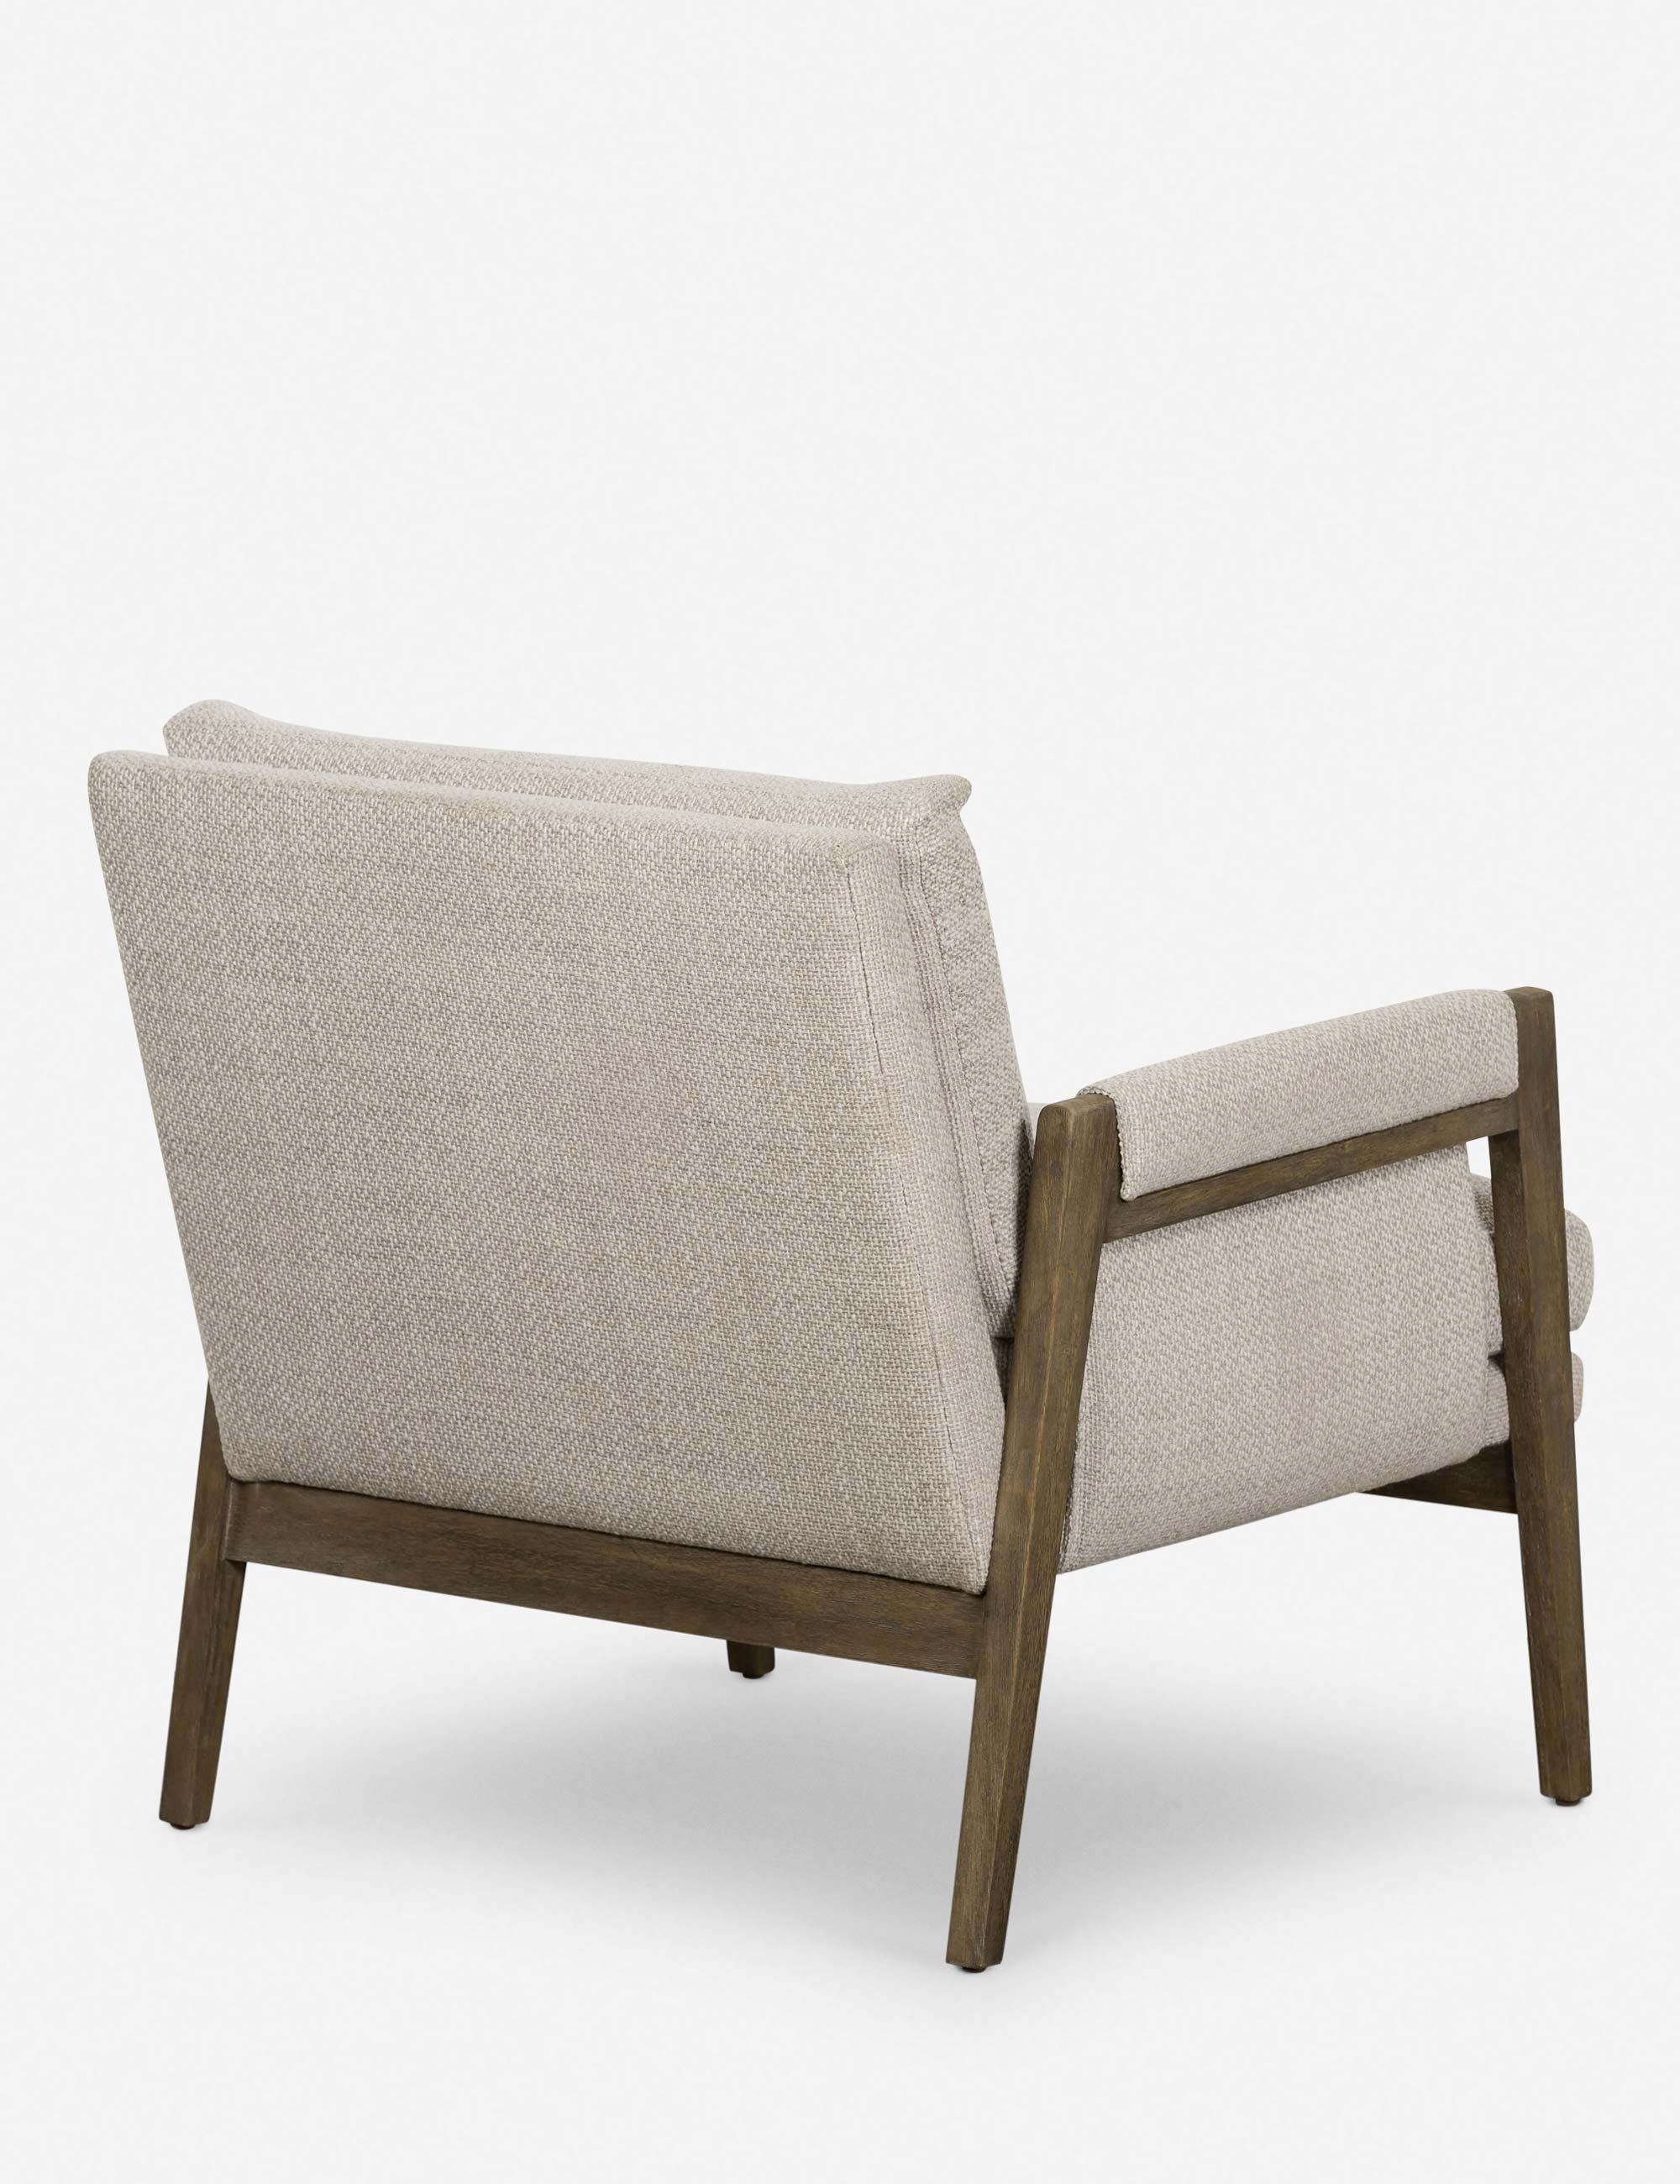 Samara Accent Chair - Image 2